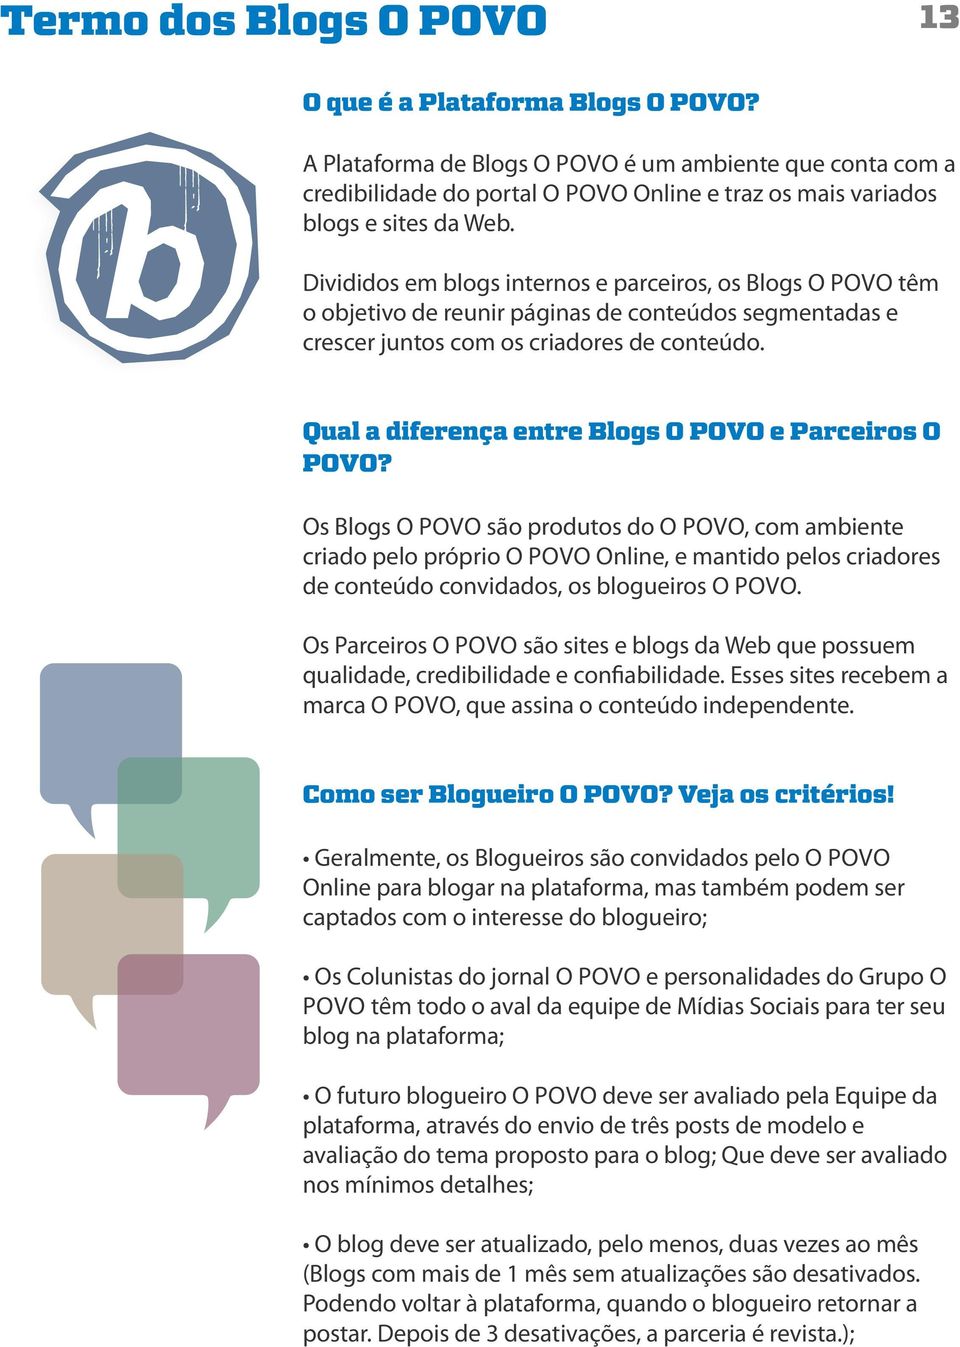 Divididos em blogs internos e parceiros, os Blogs O POVO têm o objetivo de reunir páginas de conteúdos segmentadas e crescer juntos com os criadores de conteúdo.